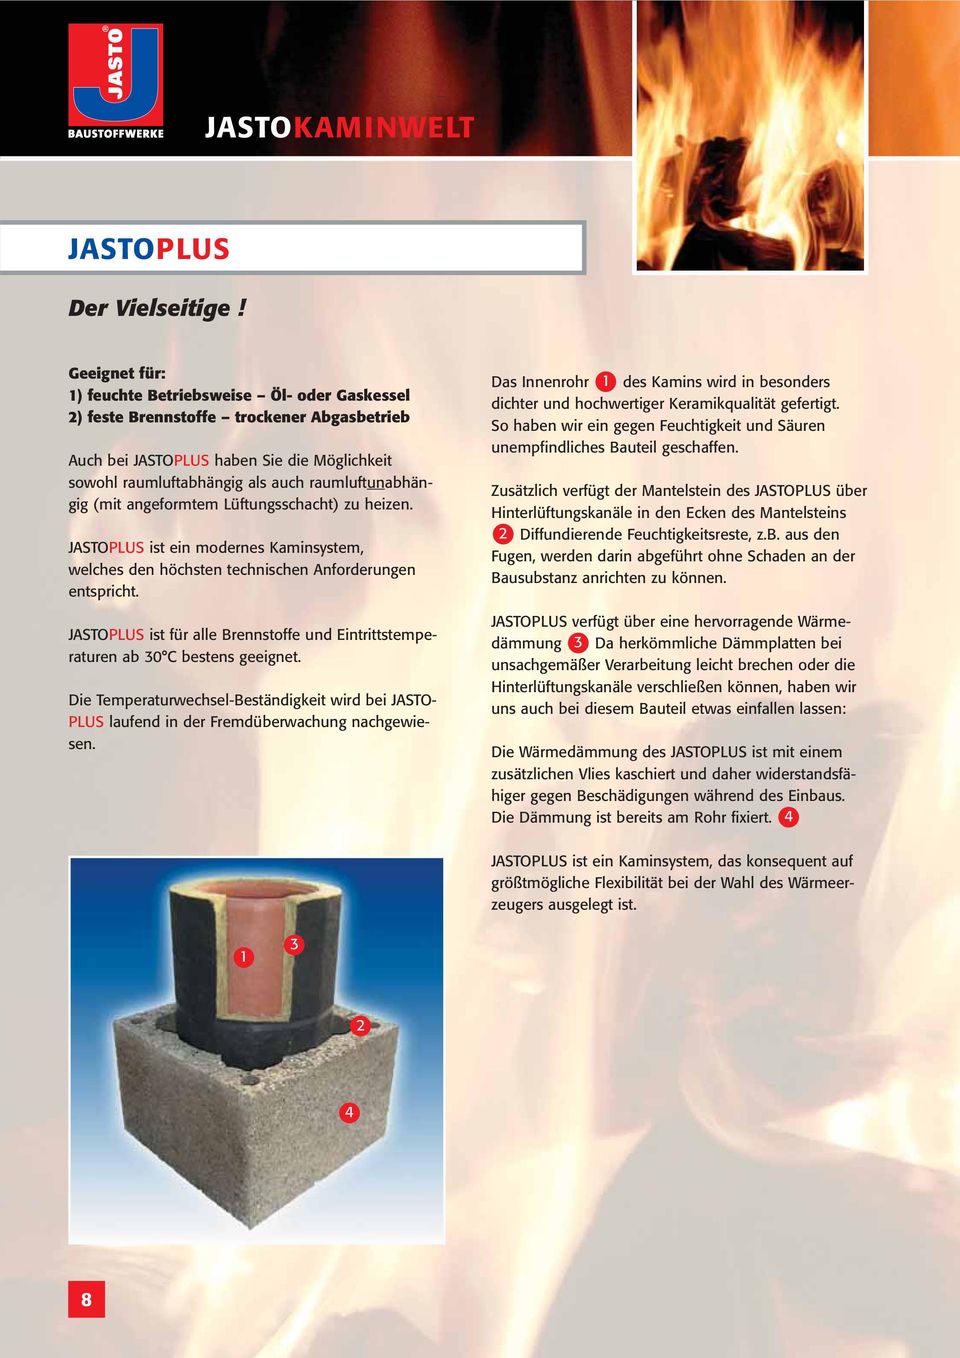 (mit angeformtem Lüftungsschacht) zu heizen. JASTOPLUS ist ein modernes Kaminsystem, welches den höchsten technischen Anforderungen entspricht.